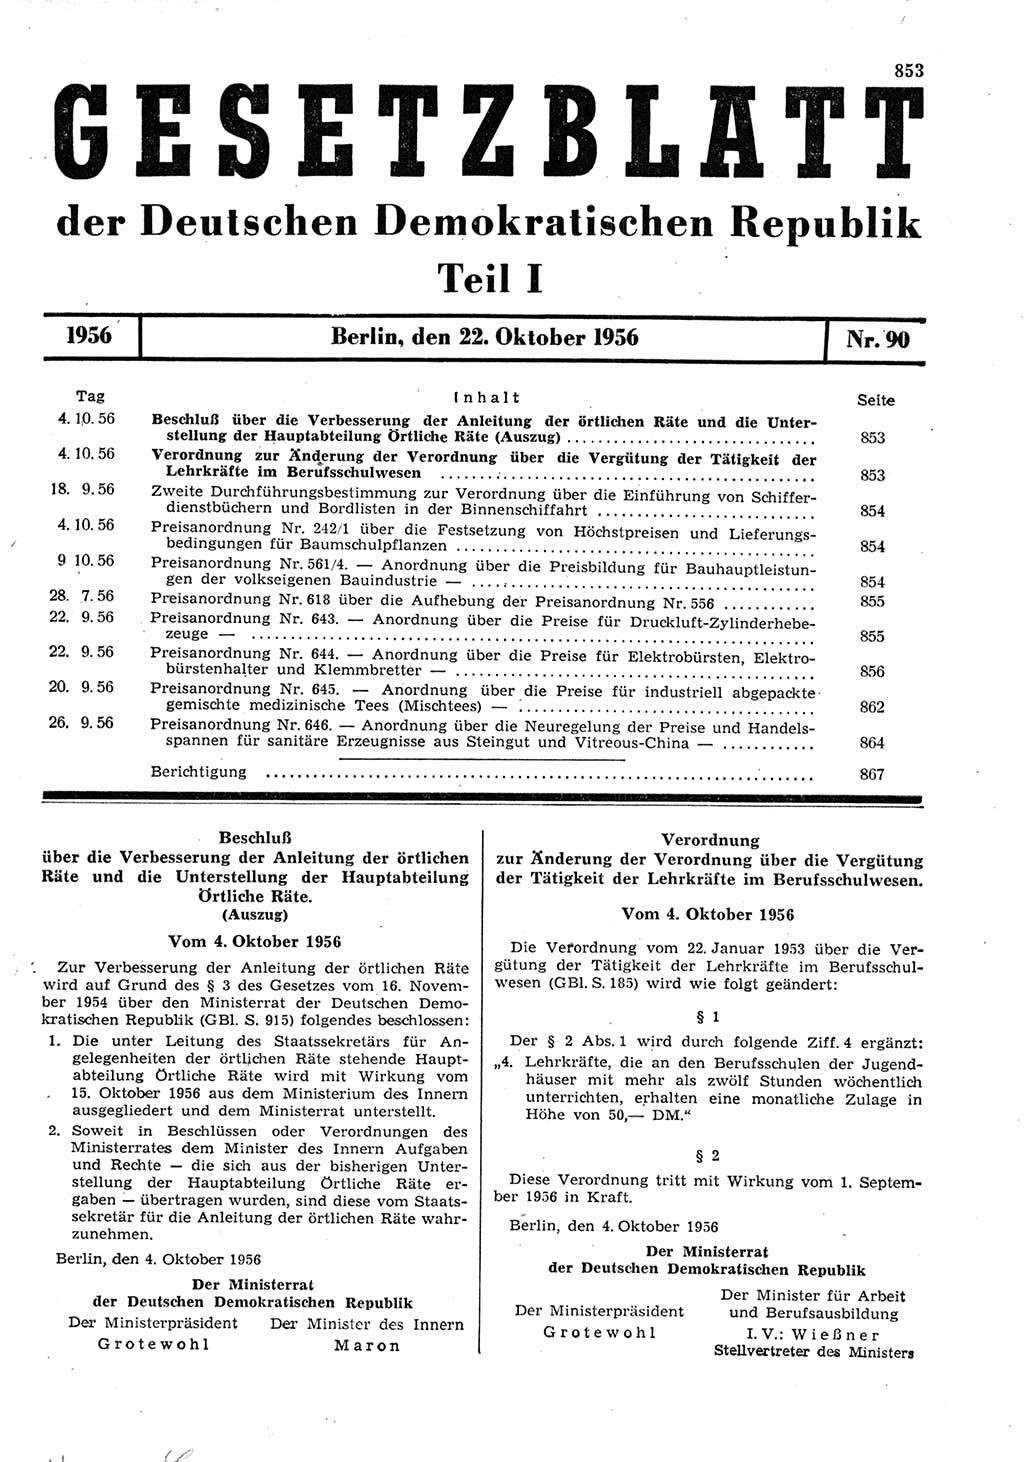 Gesetzblatt (GBl.) der Deutschen Demokratischen Republik (DDR) Teil Ⅰ 1956, Seite 853 (GBl. DDR Ⅰ 1956, S. 853)